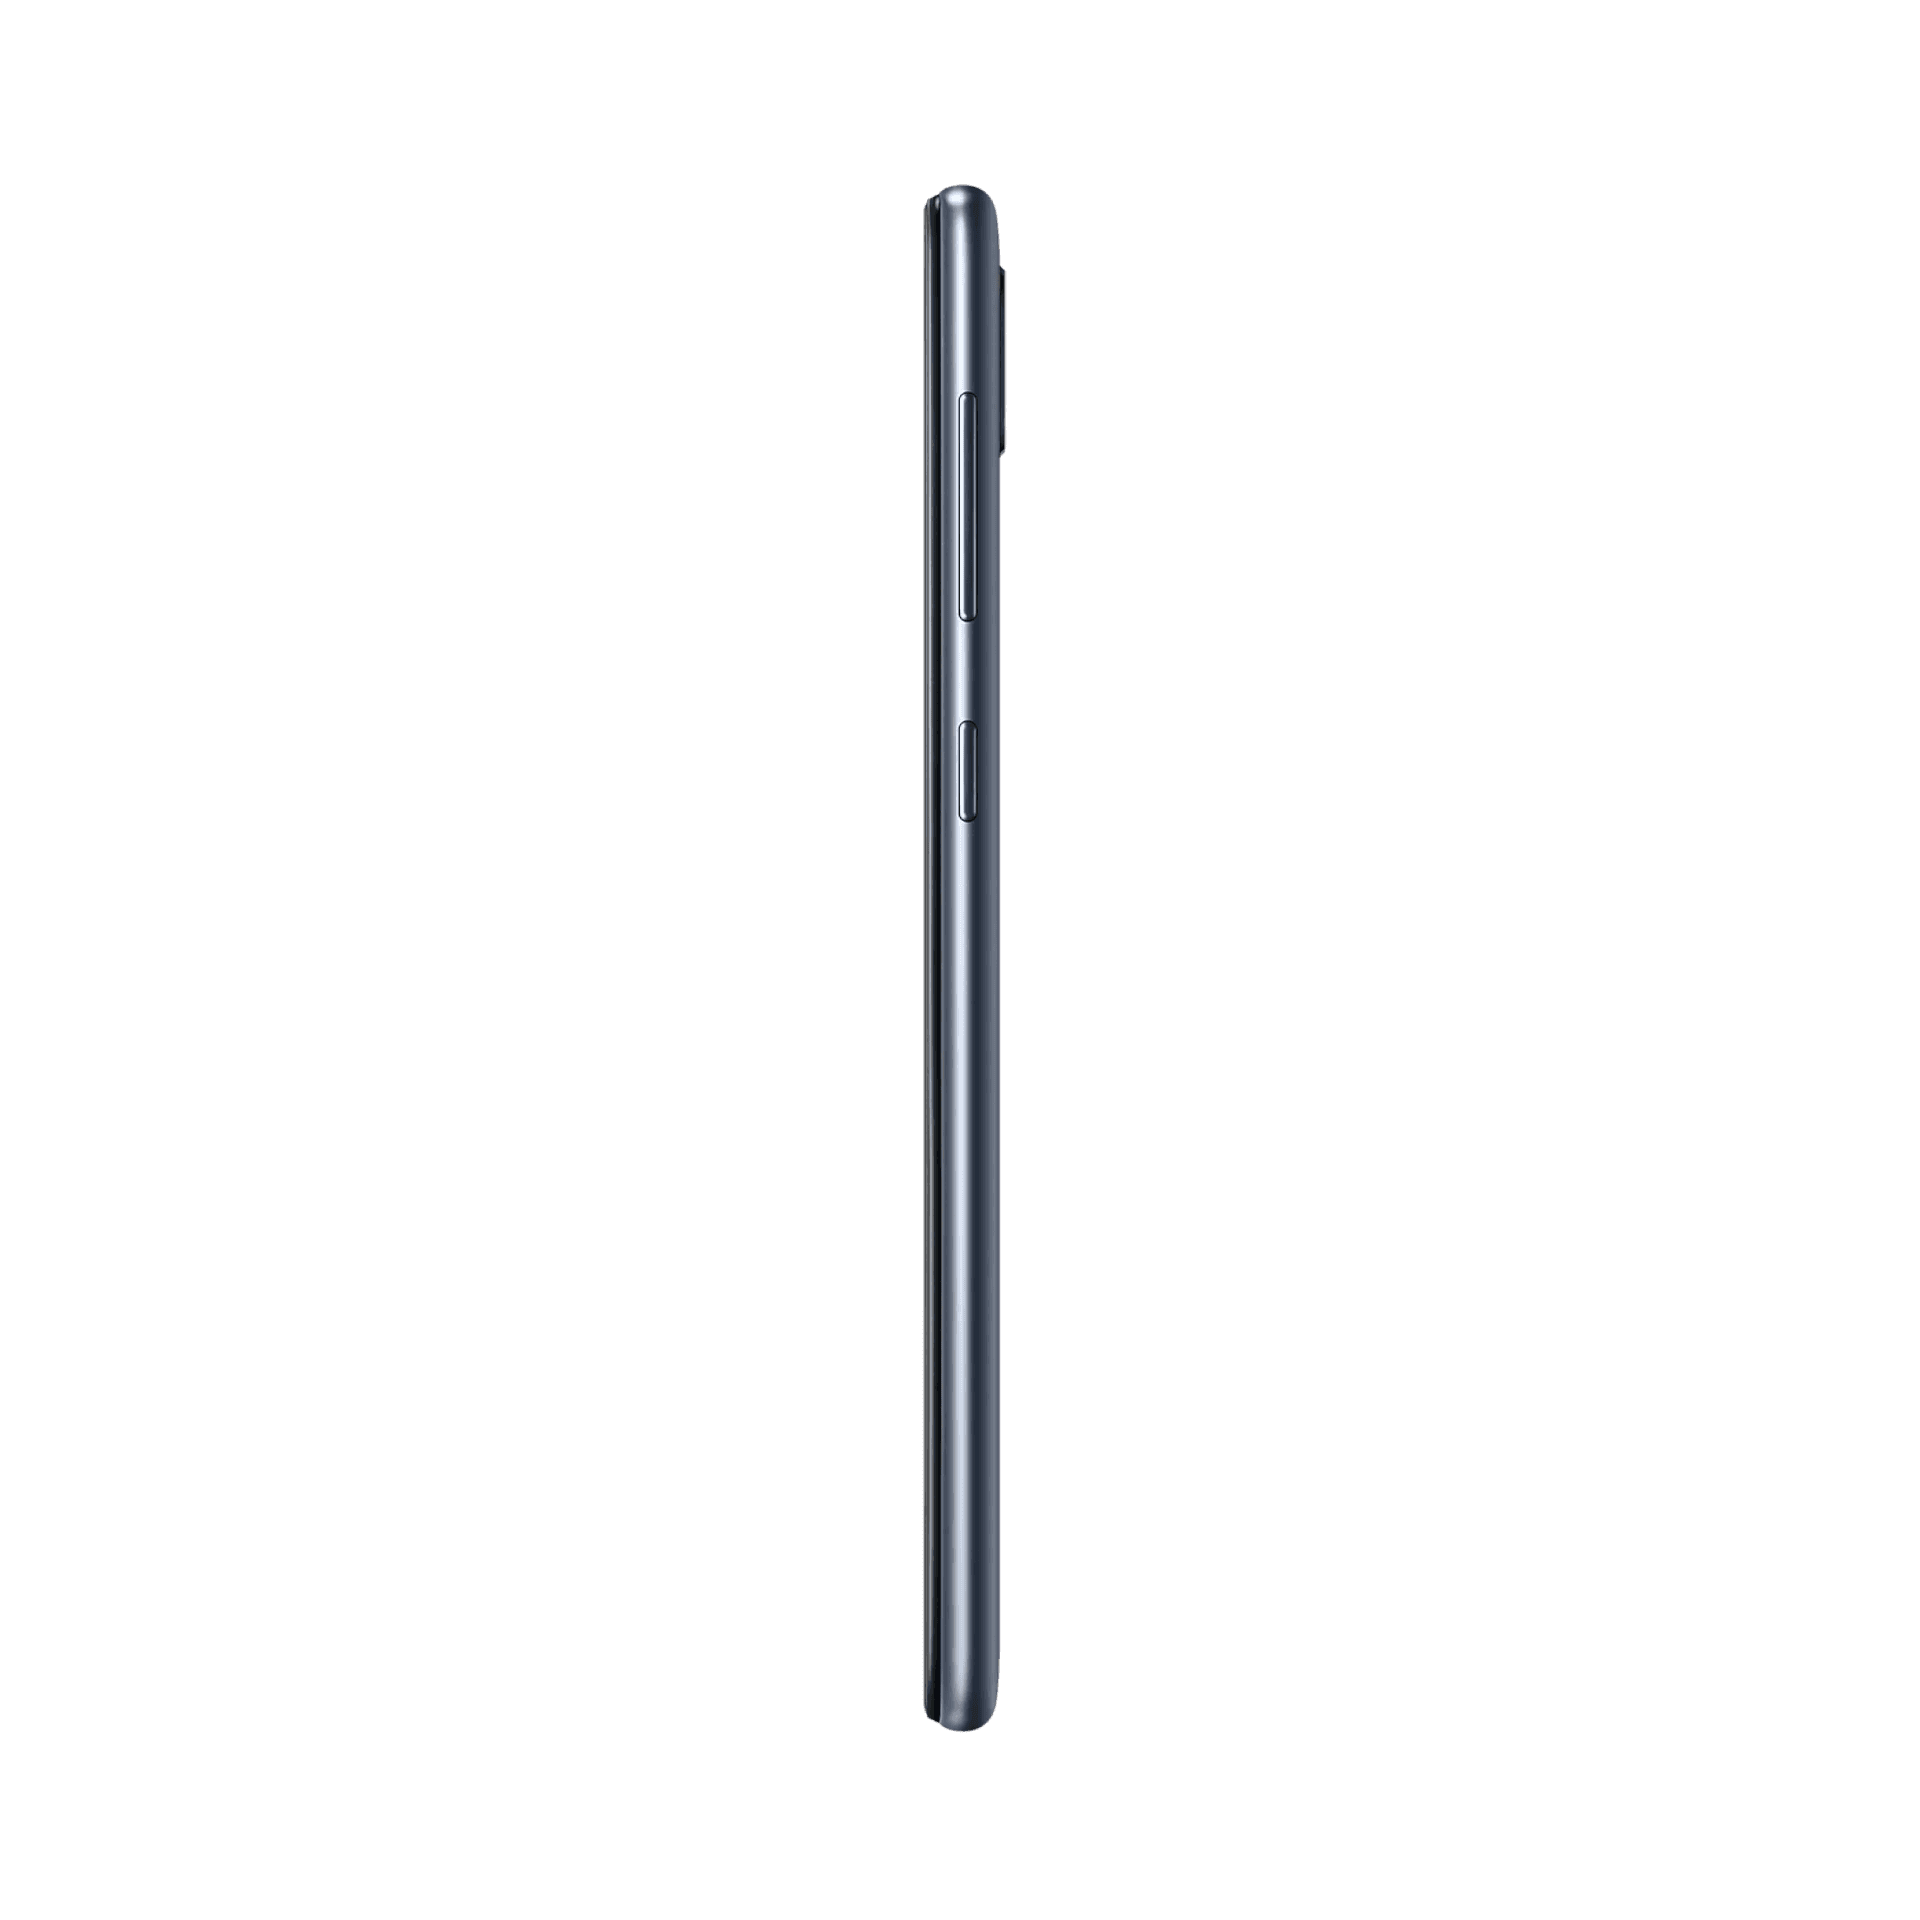 Samsung Galaxy M10 - 32 GB - Kömür Siyahı